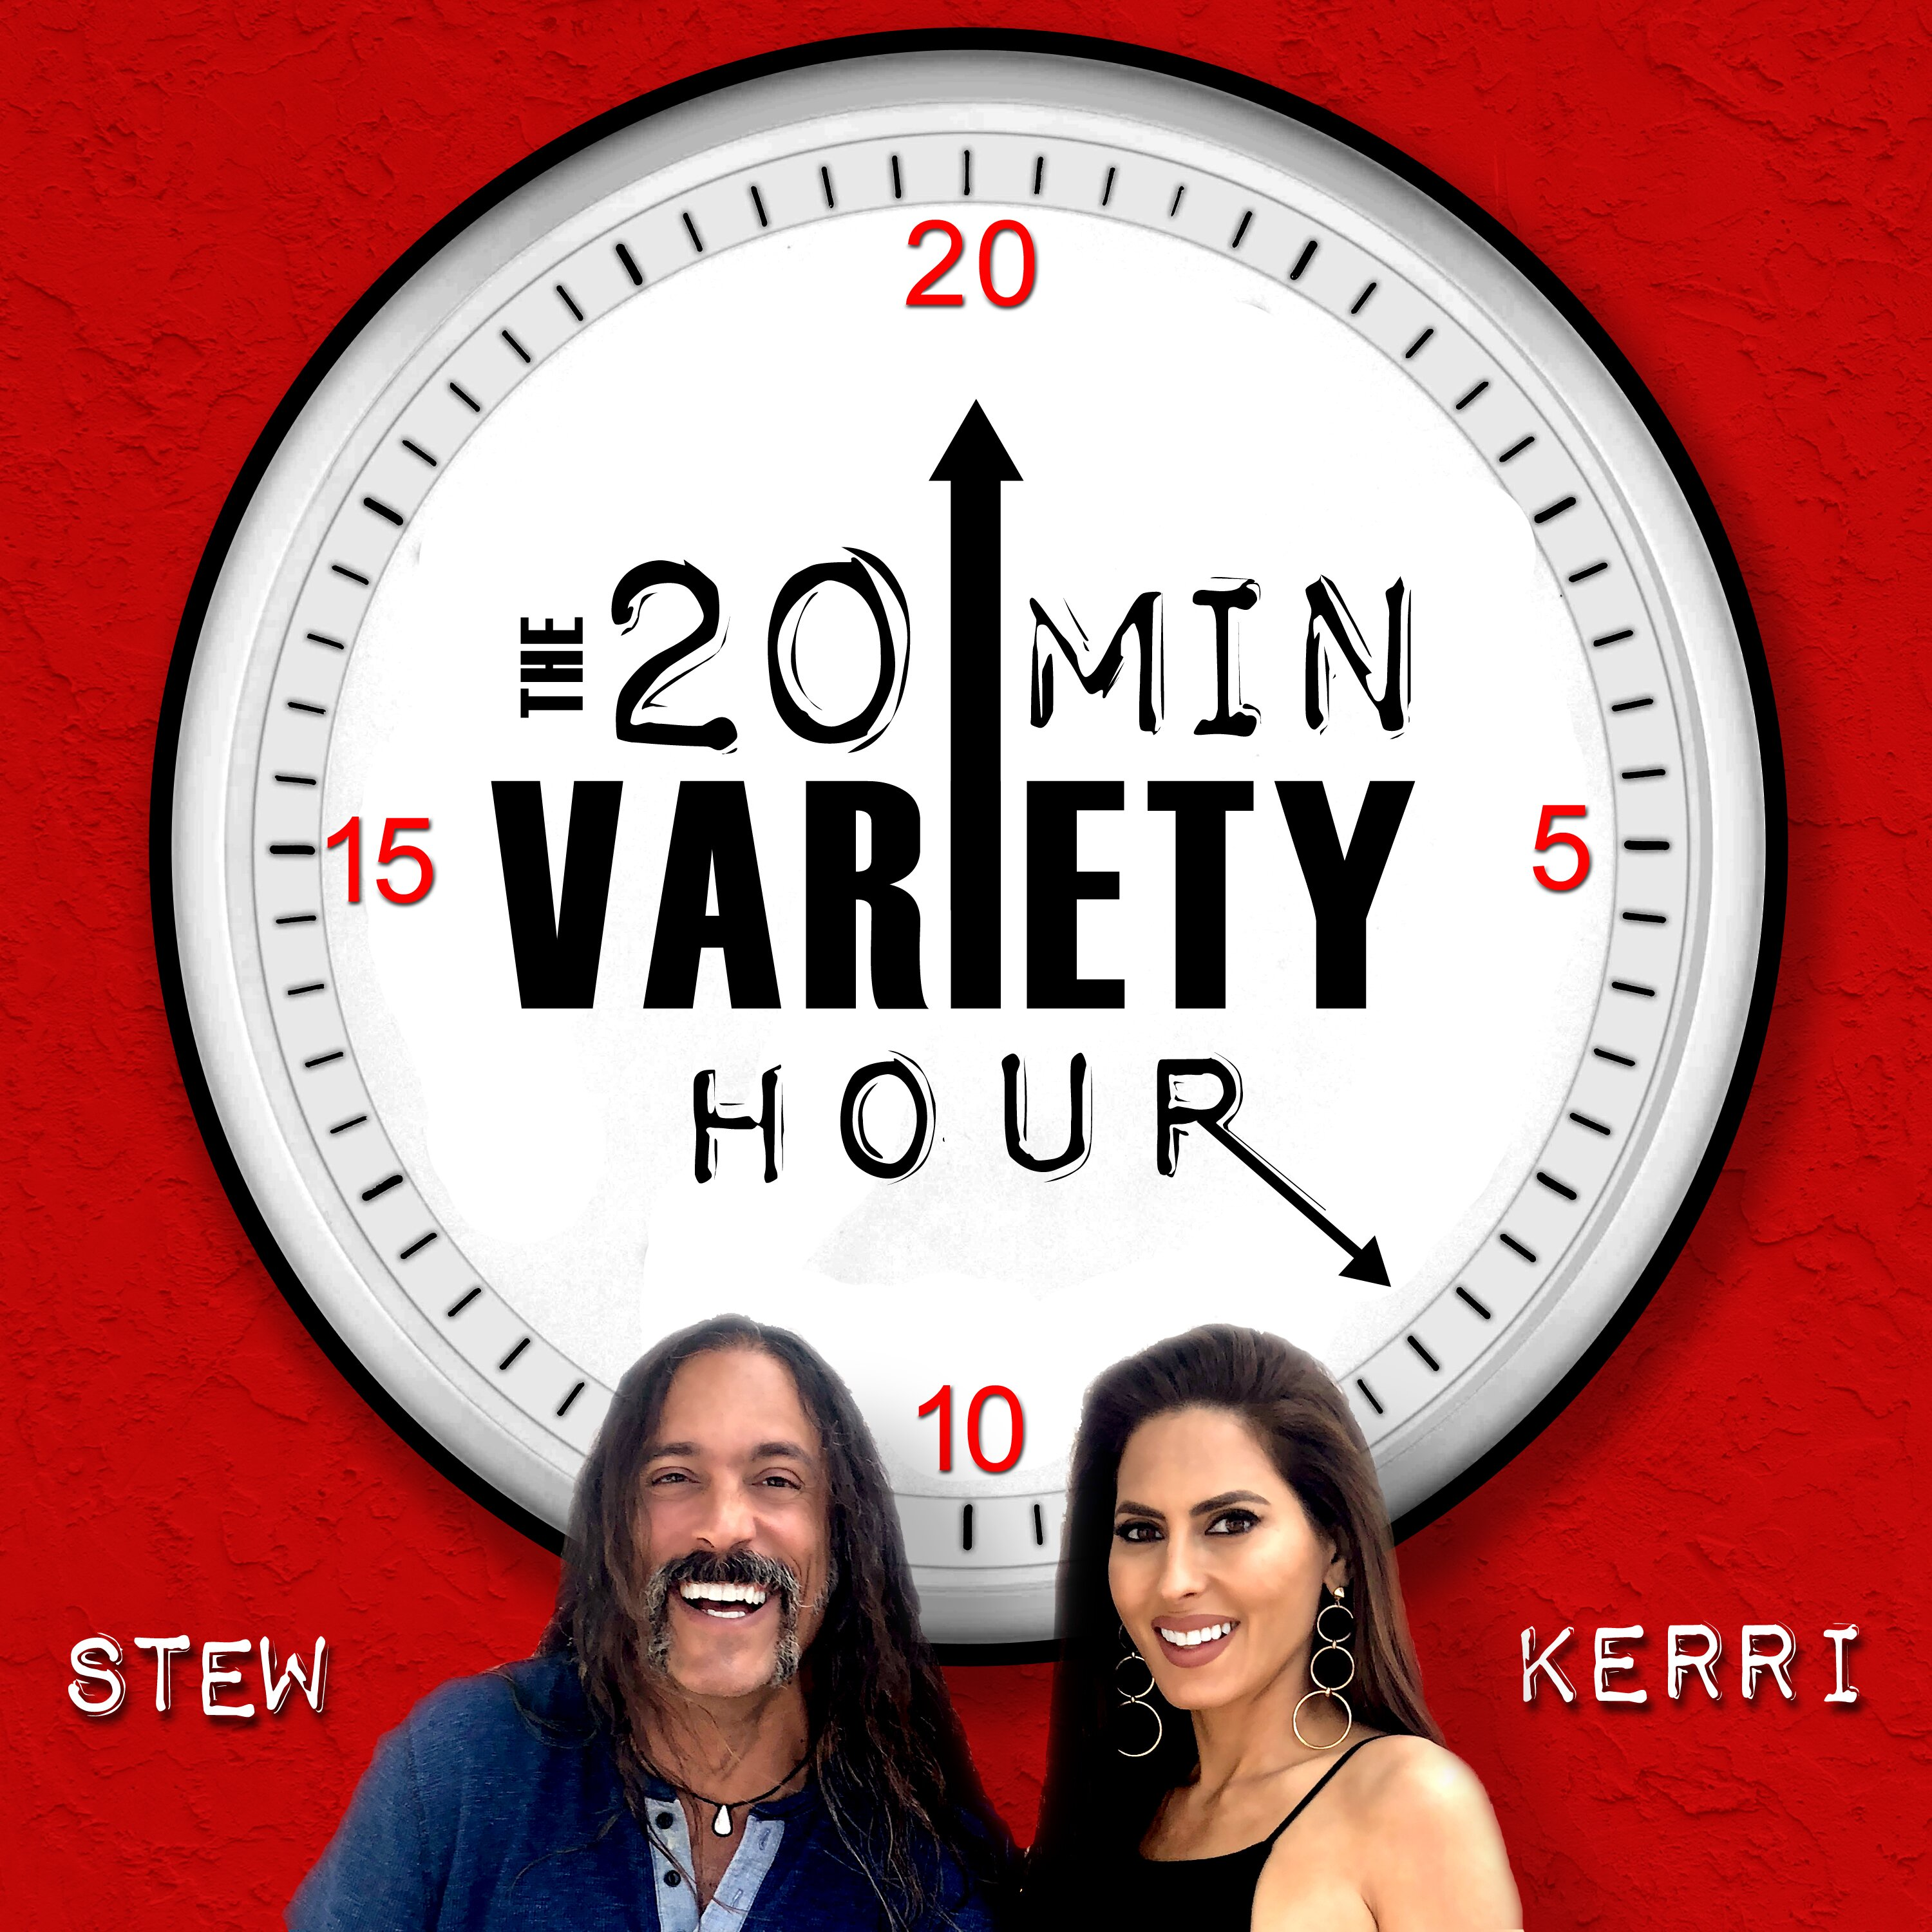 20 Min Variety Hour: Episode 4